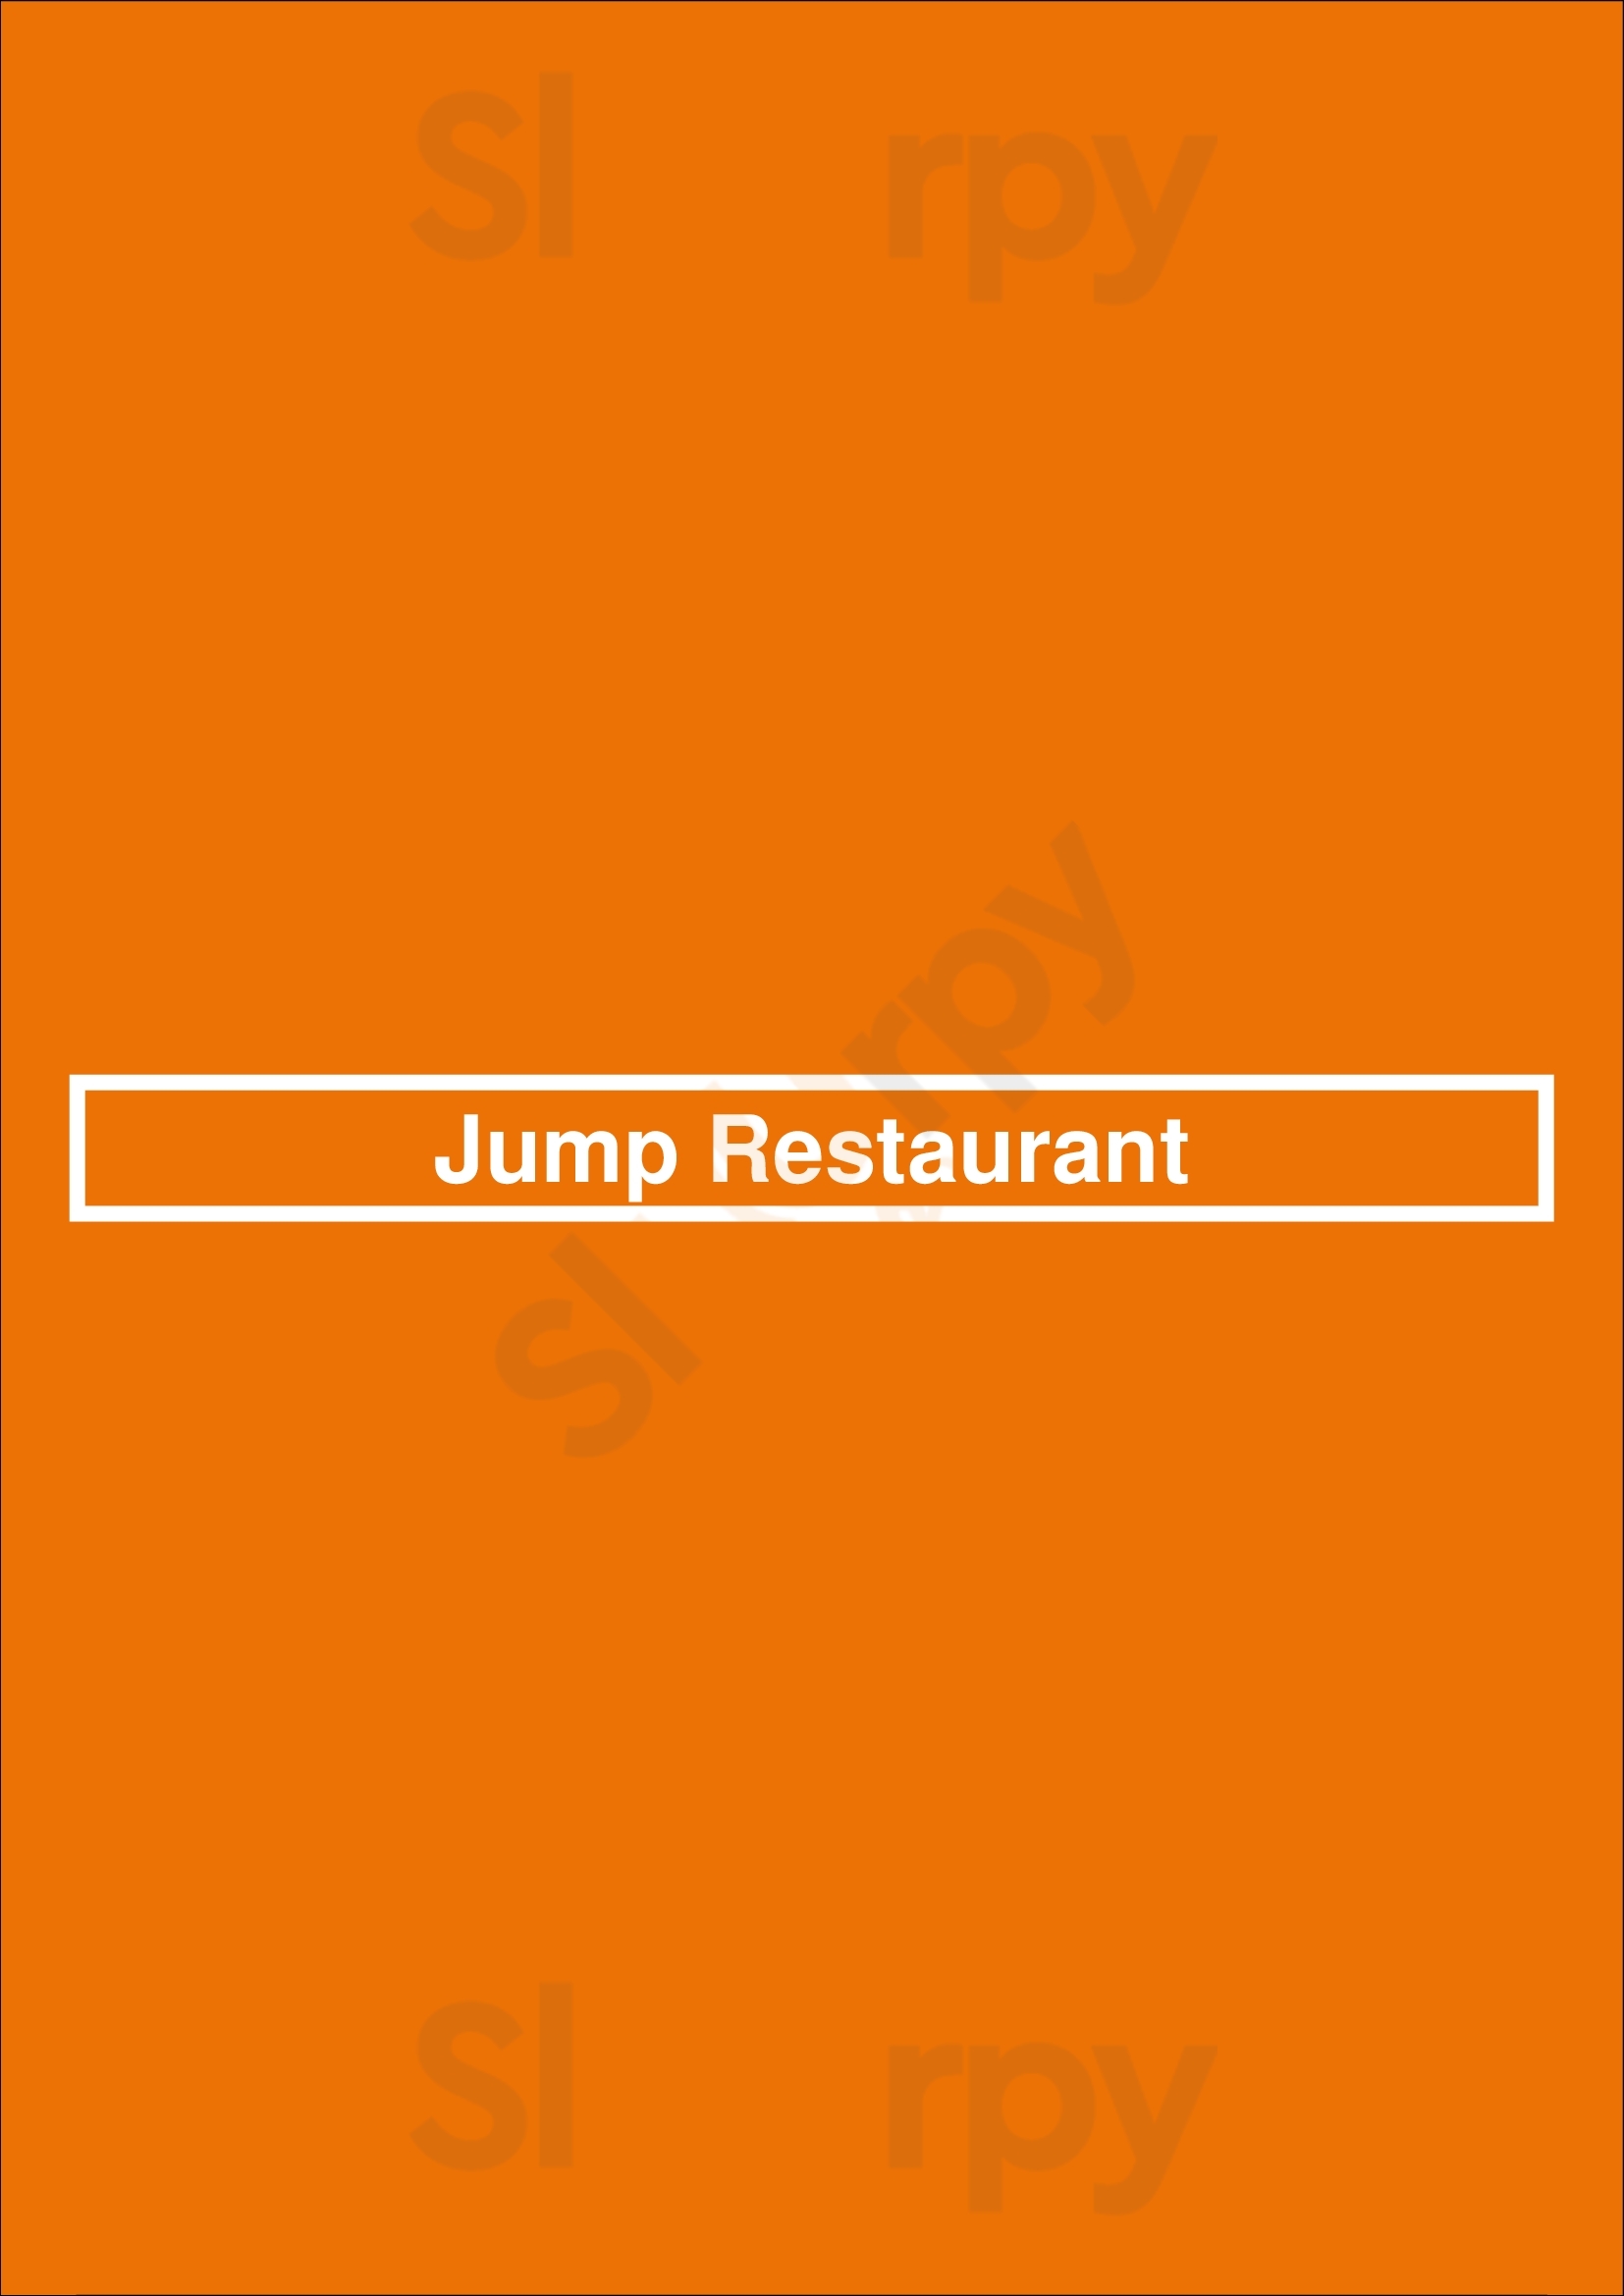 Jump Restaurant Toronto Menu - 1